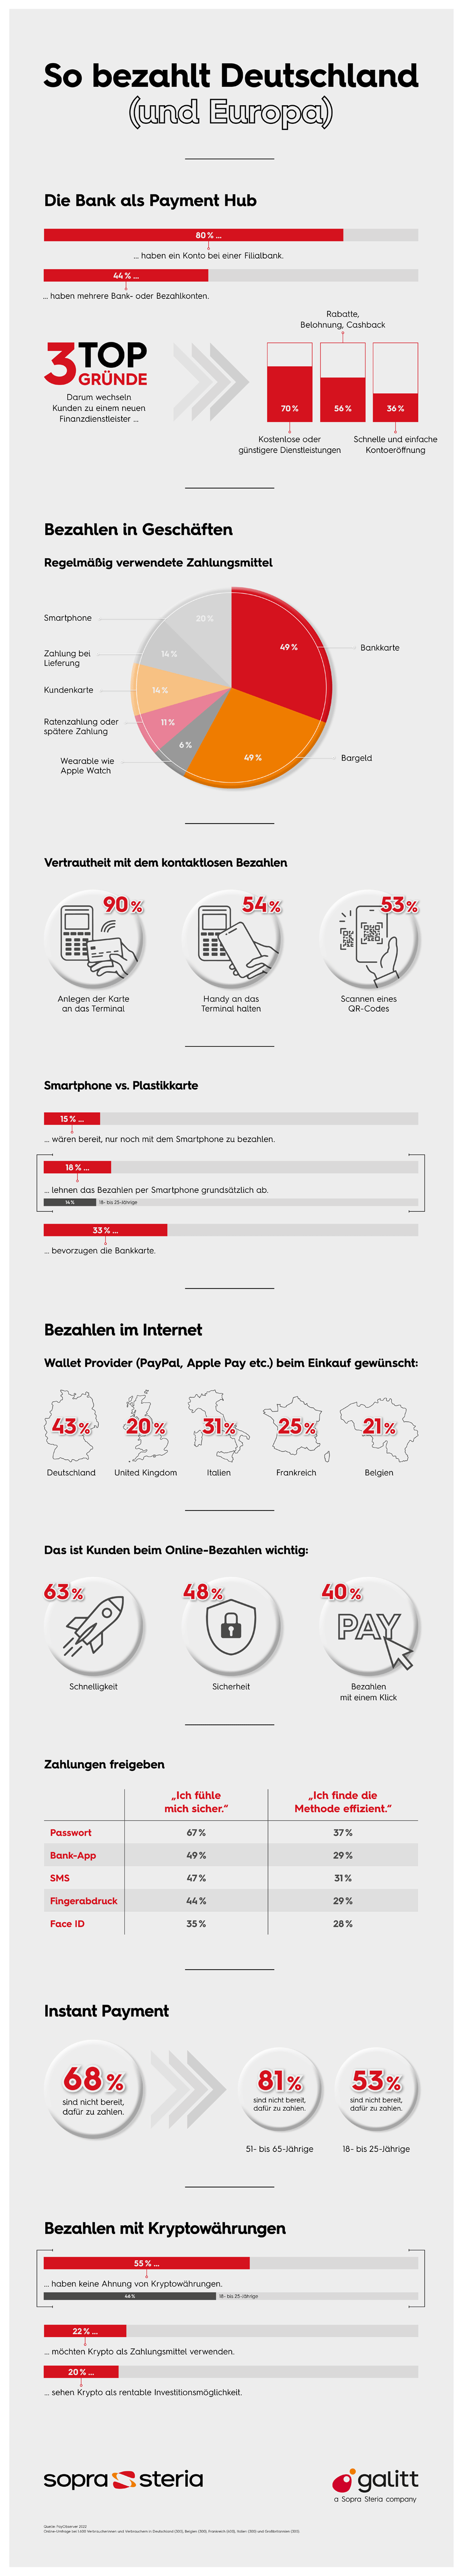 Infografik: Zahlungsgewohnheiten in Deutschland und Europa